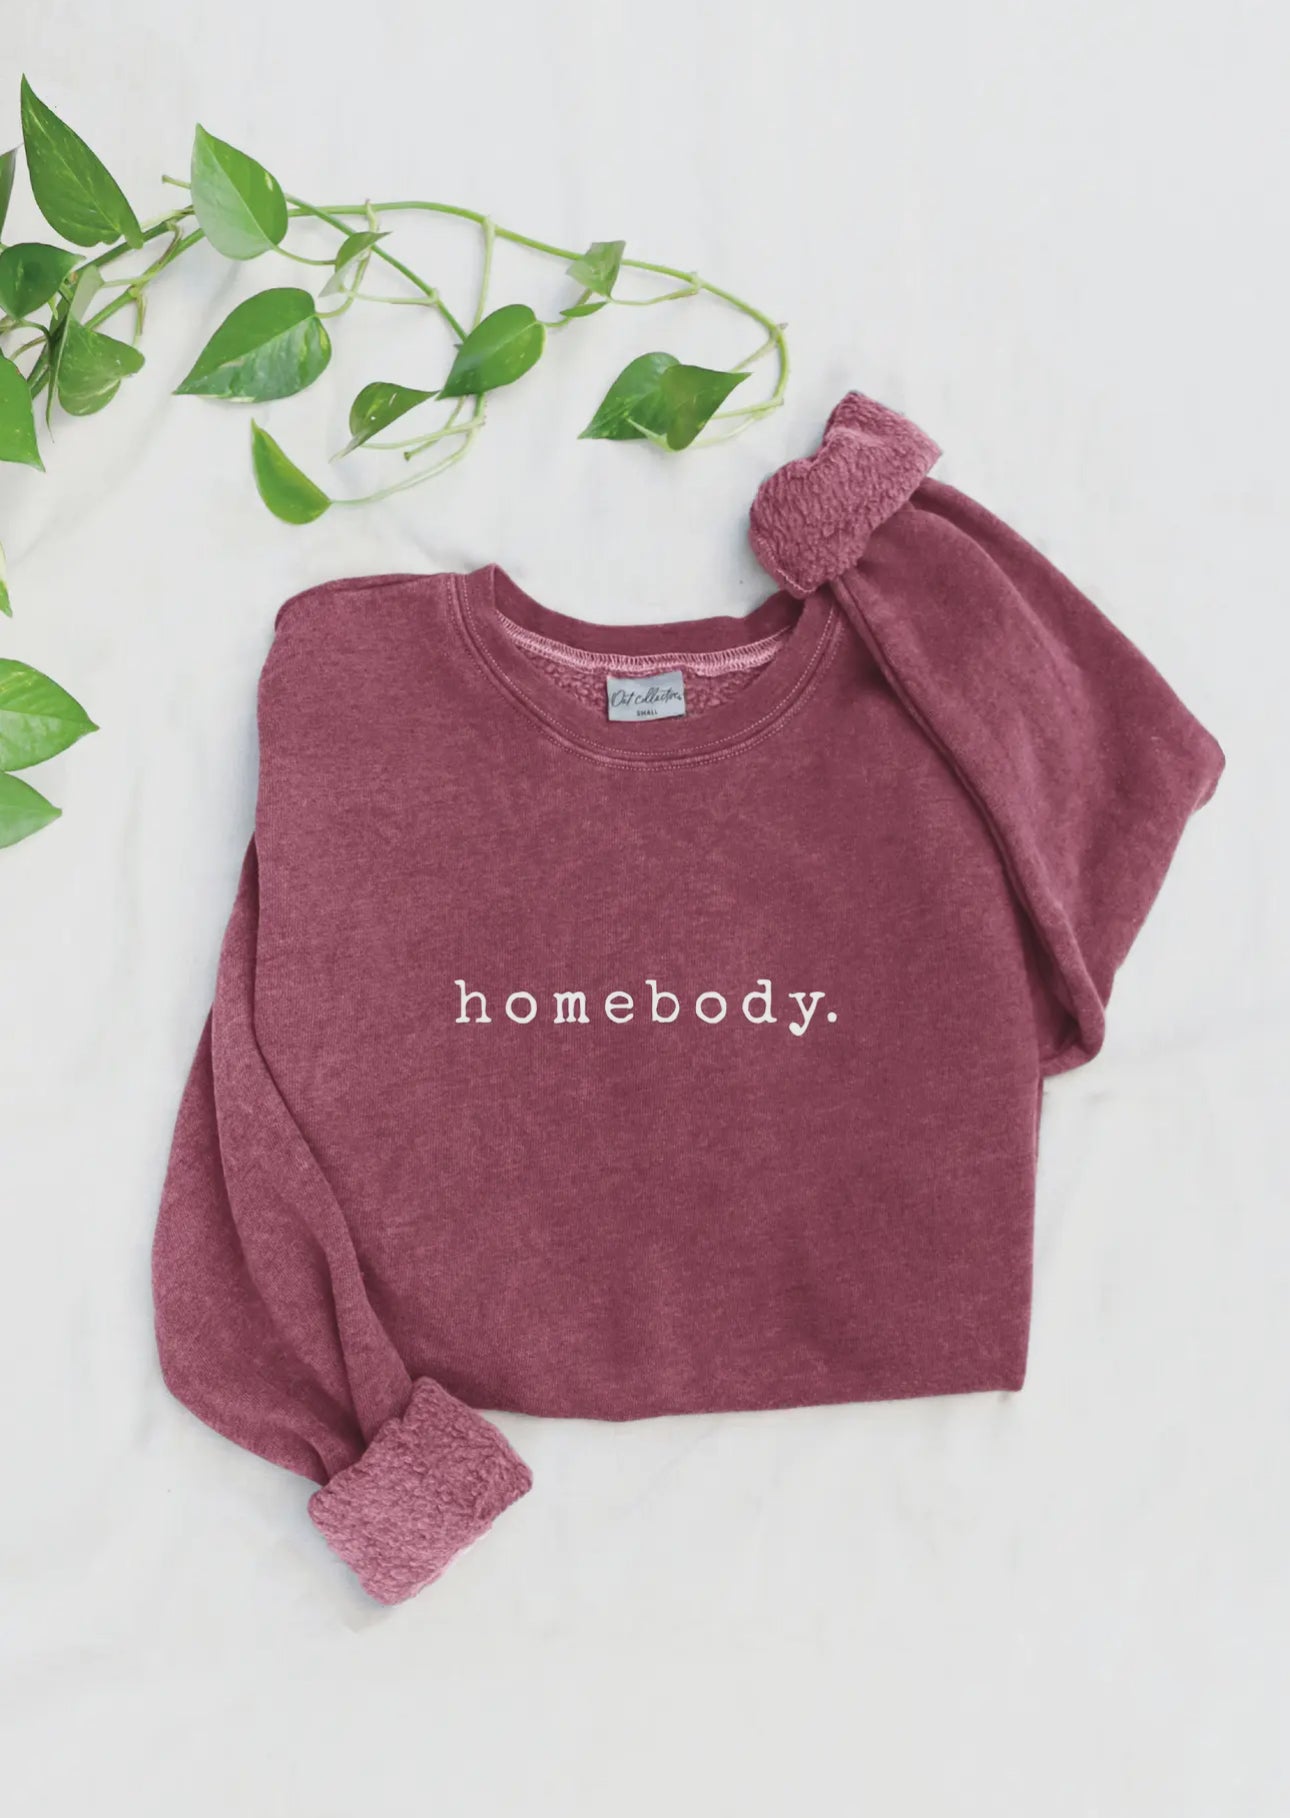 Homebody graphic sweatshirt